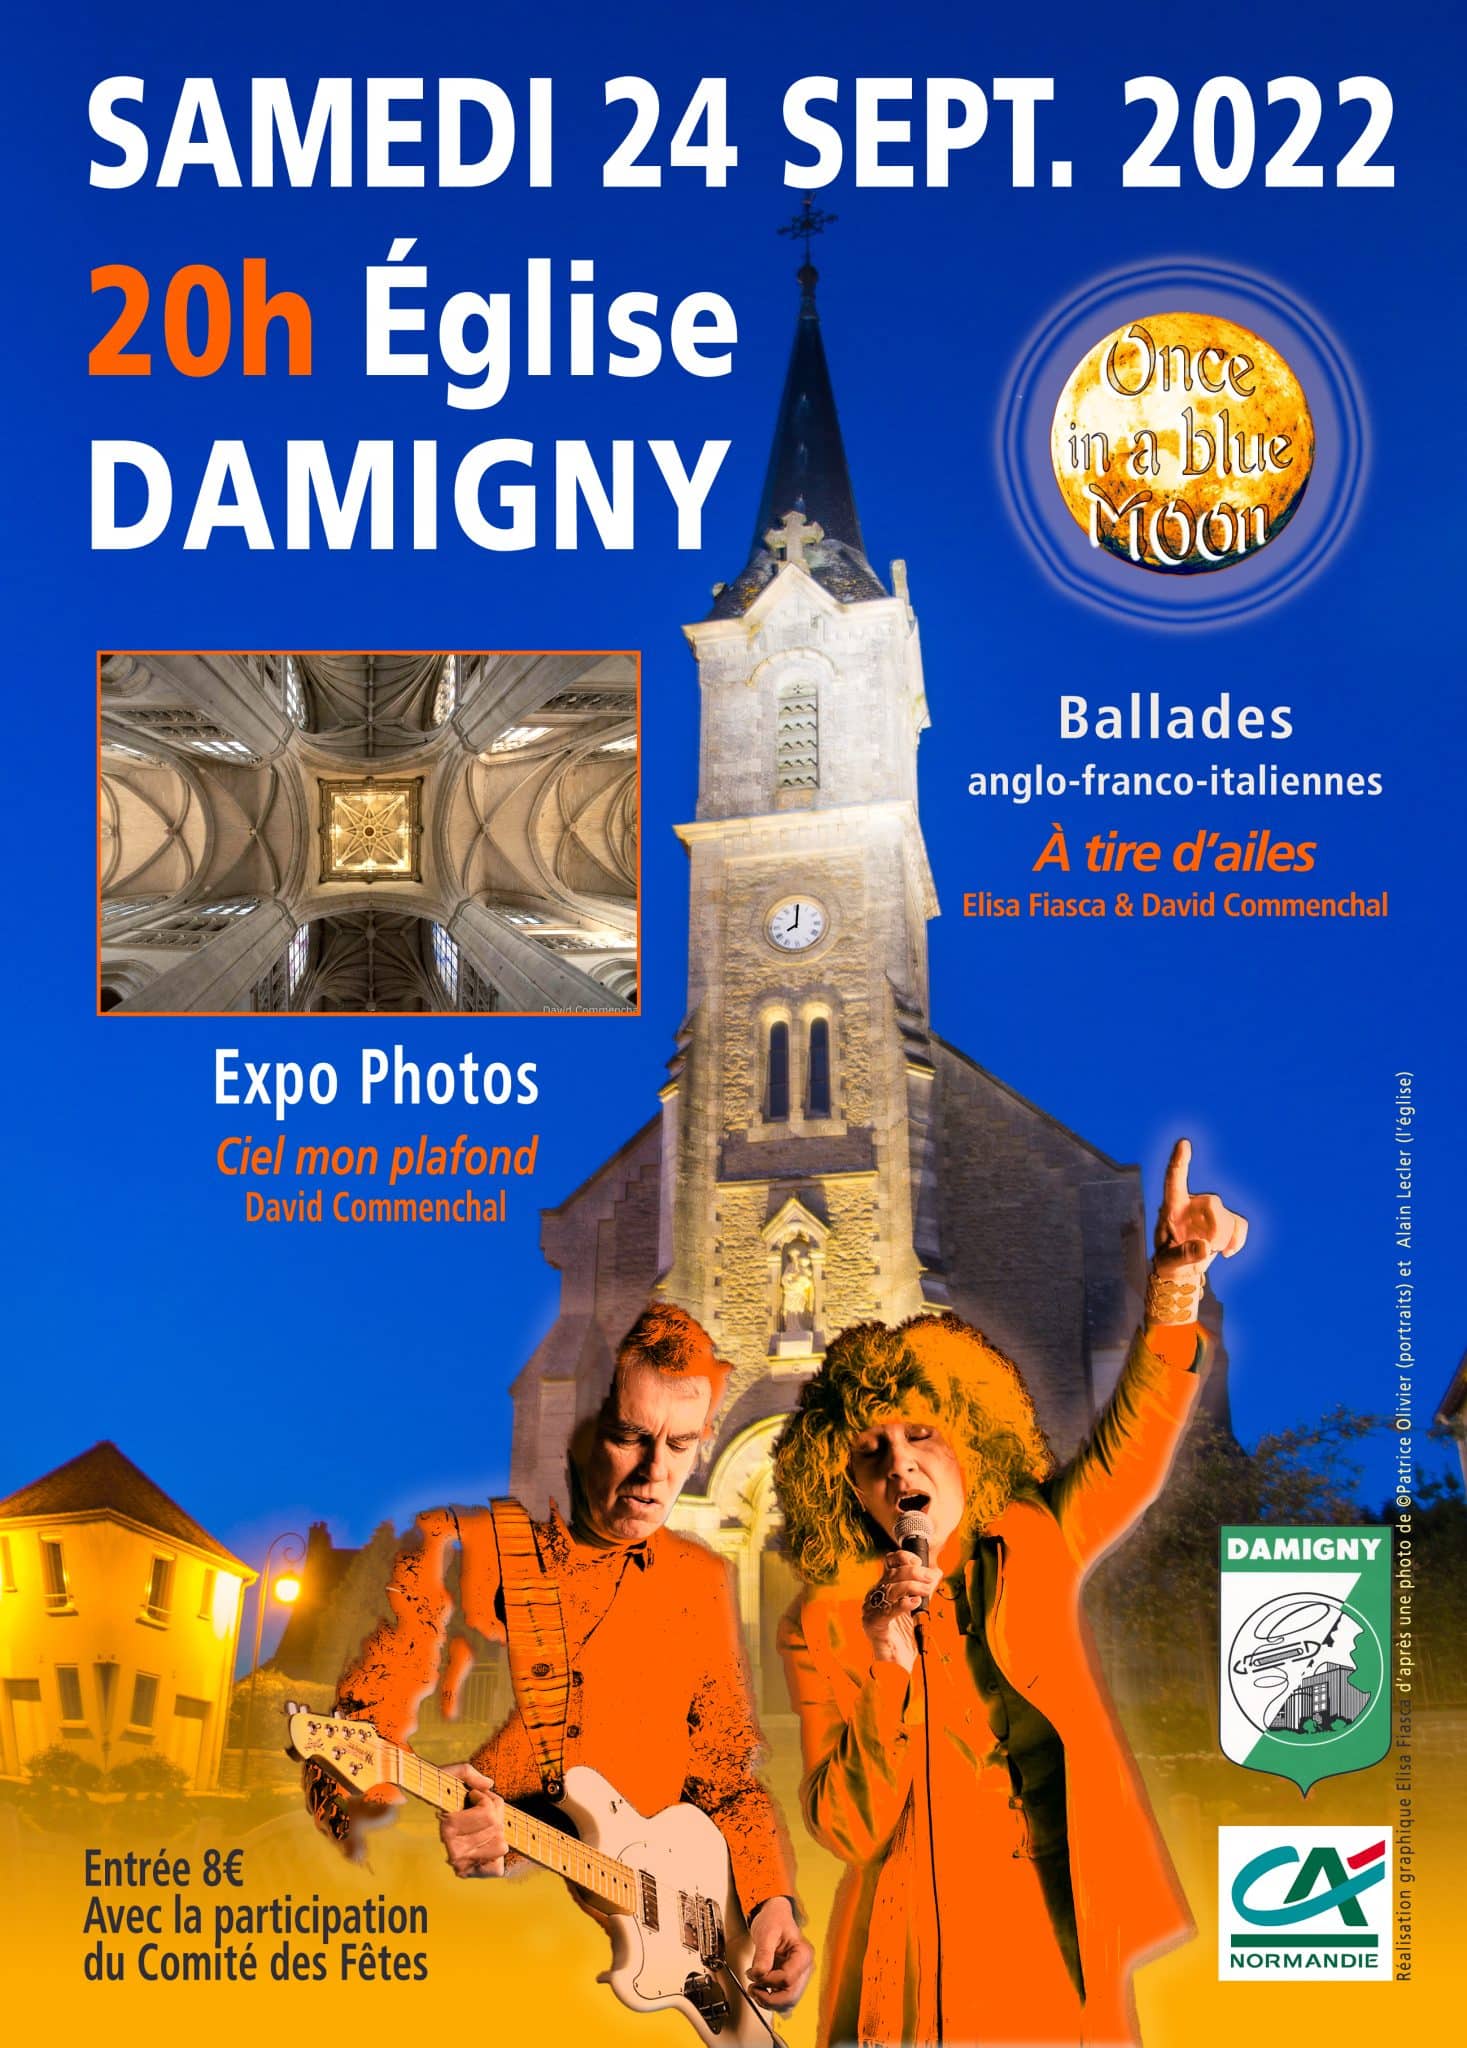 Samedi 24 septembre 2022 20h Eglise de Damigny (expo photos et ballades anglo-franco italiennes avec Elisa Fiasca et David Commenchal)